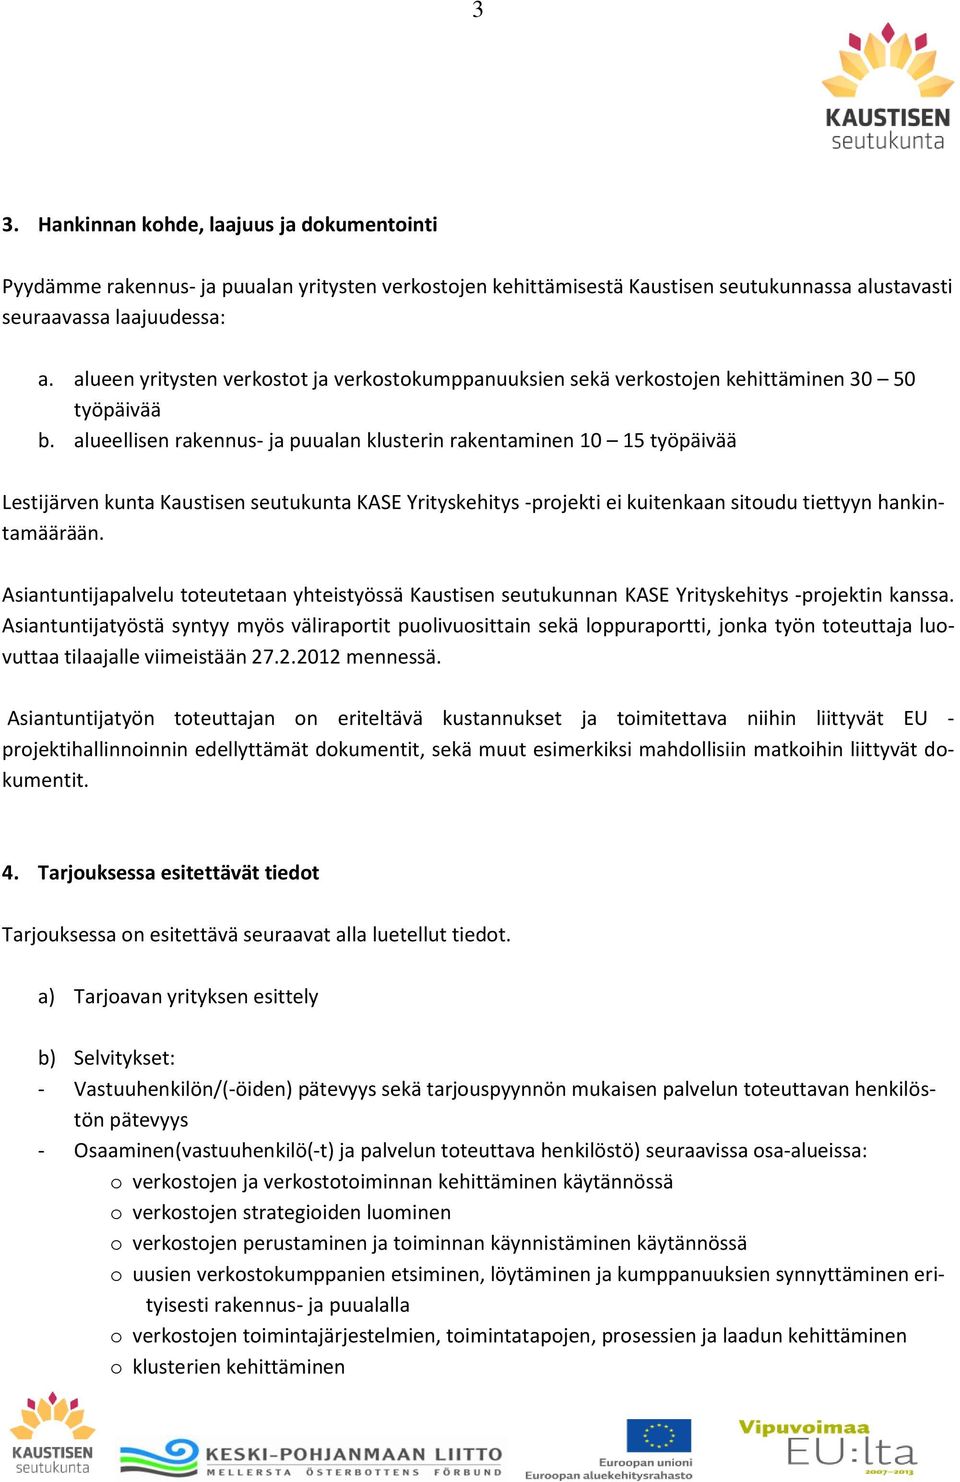 alueellisen rakennus- ja puualan klusterin rakentaminen 10 15 työpäivää Lestijärven kunta Kaustisen seutukunta KASE Yrityskehitys -projekti ei kuitenkaan sitoudu tiettyyn hankintamäärään.